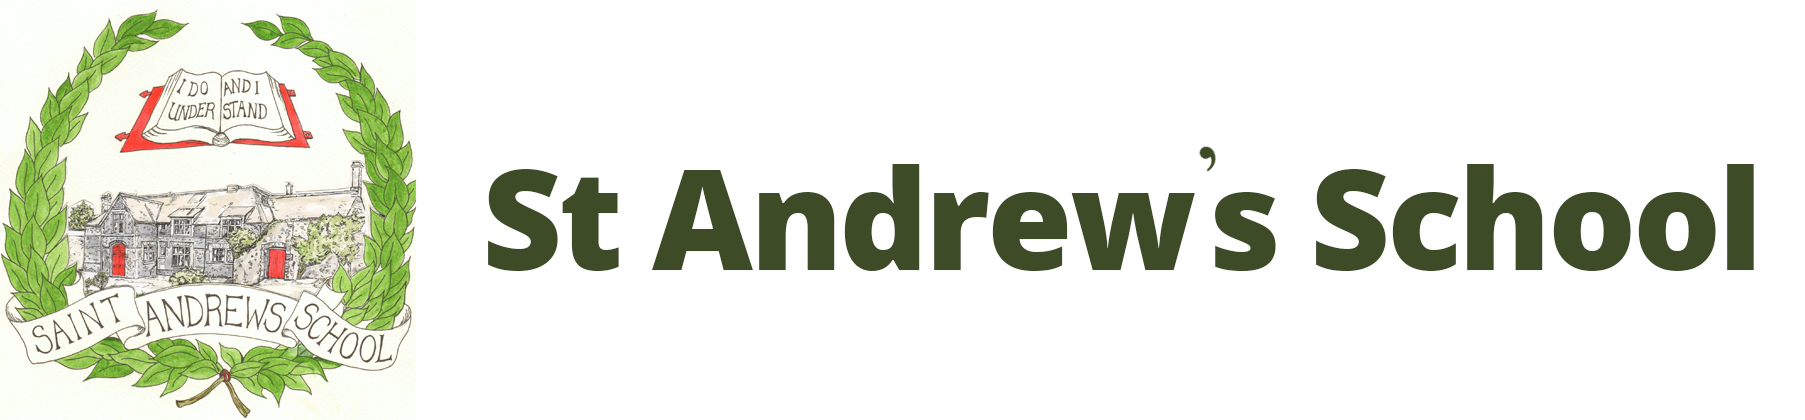 The St Andrew's School Trust logo